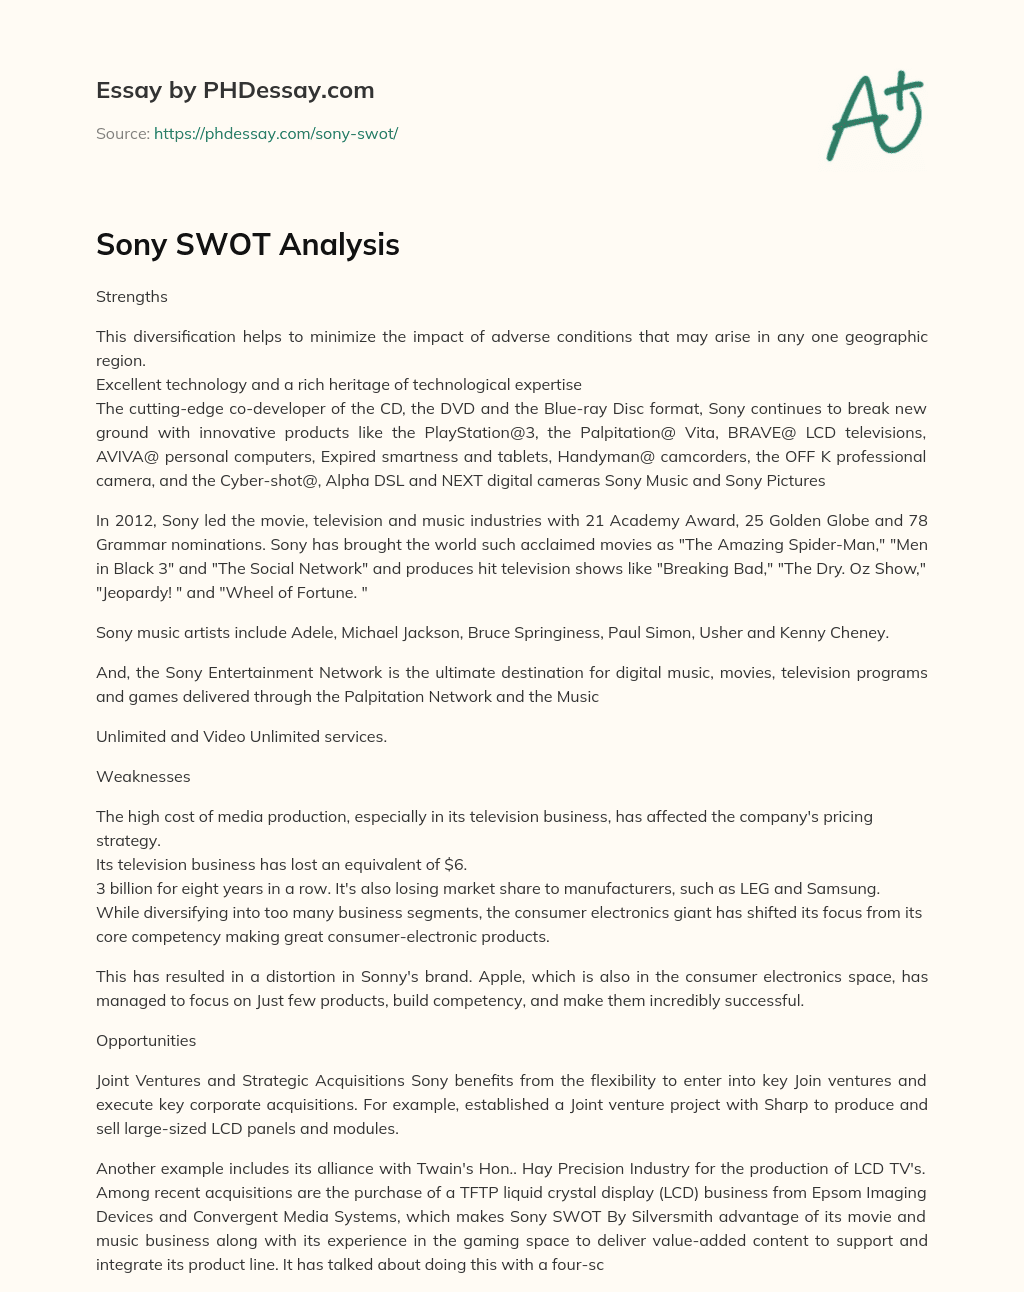 Sony SWOT Analysis essay